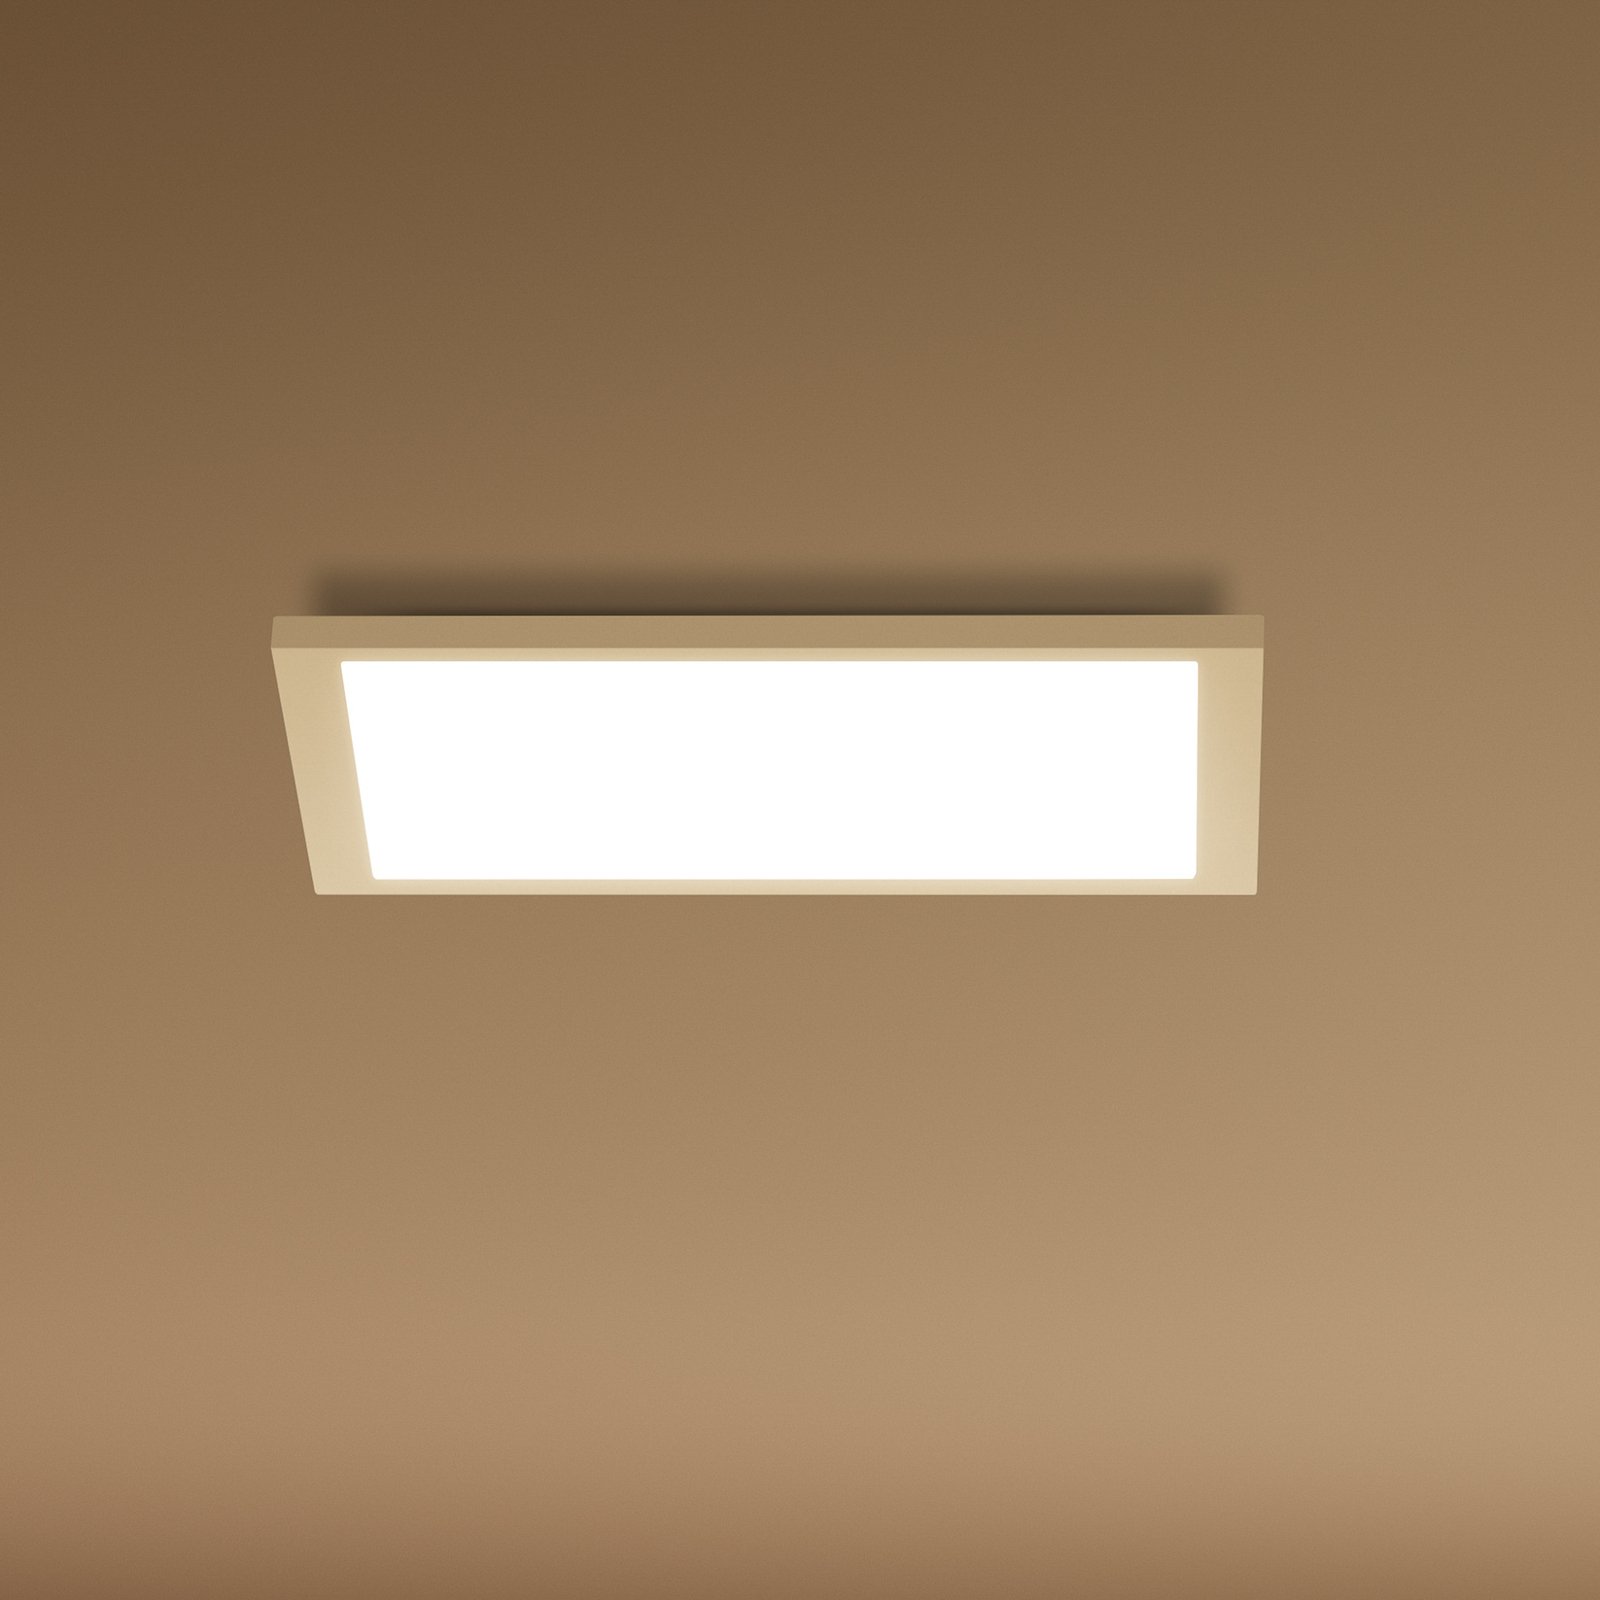 WiZ LED ceiling light panel, white, 30x30 cm